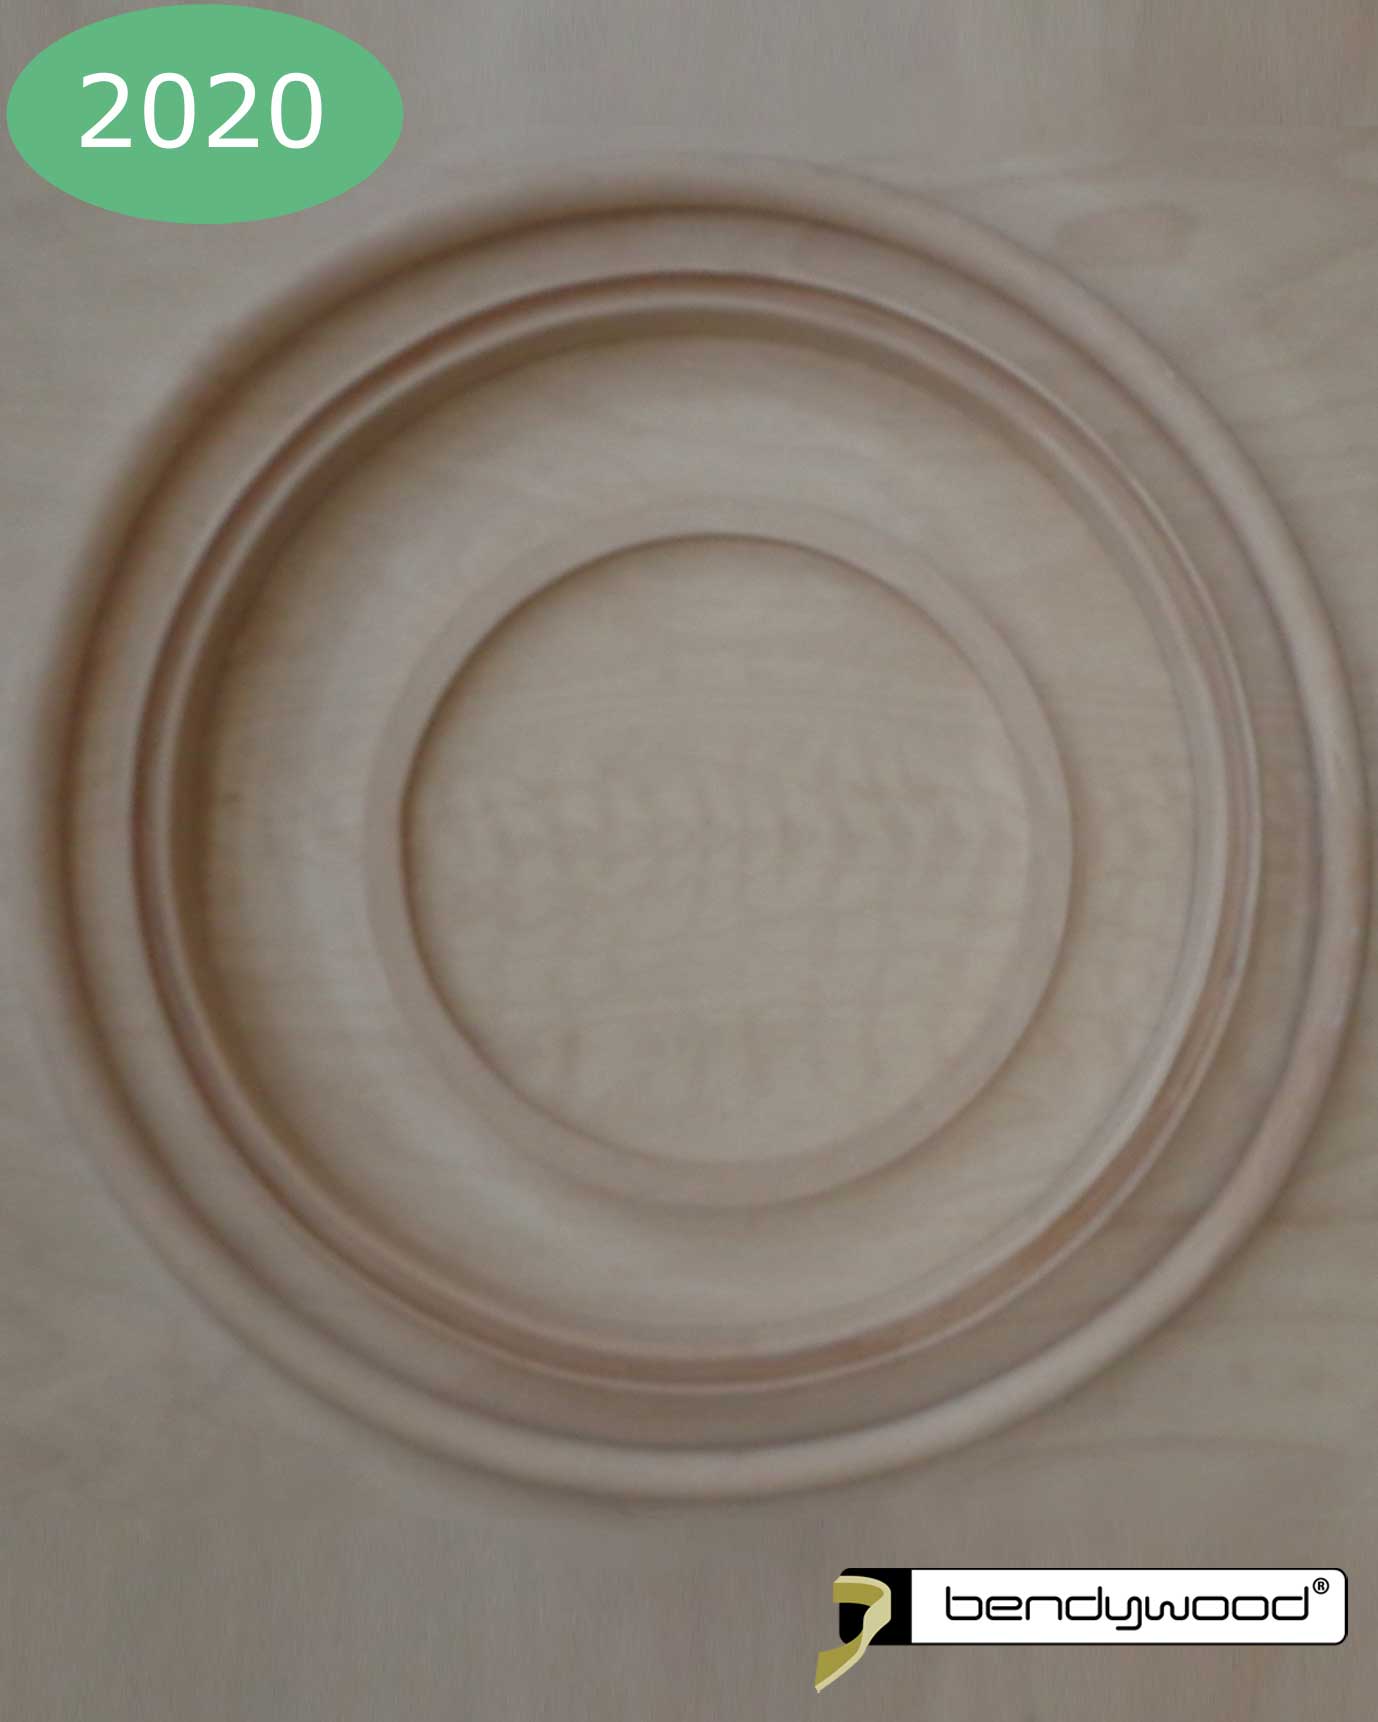 Wooden ring 160 cm in Bendywood® for pendant light.